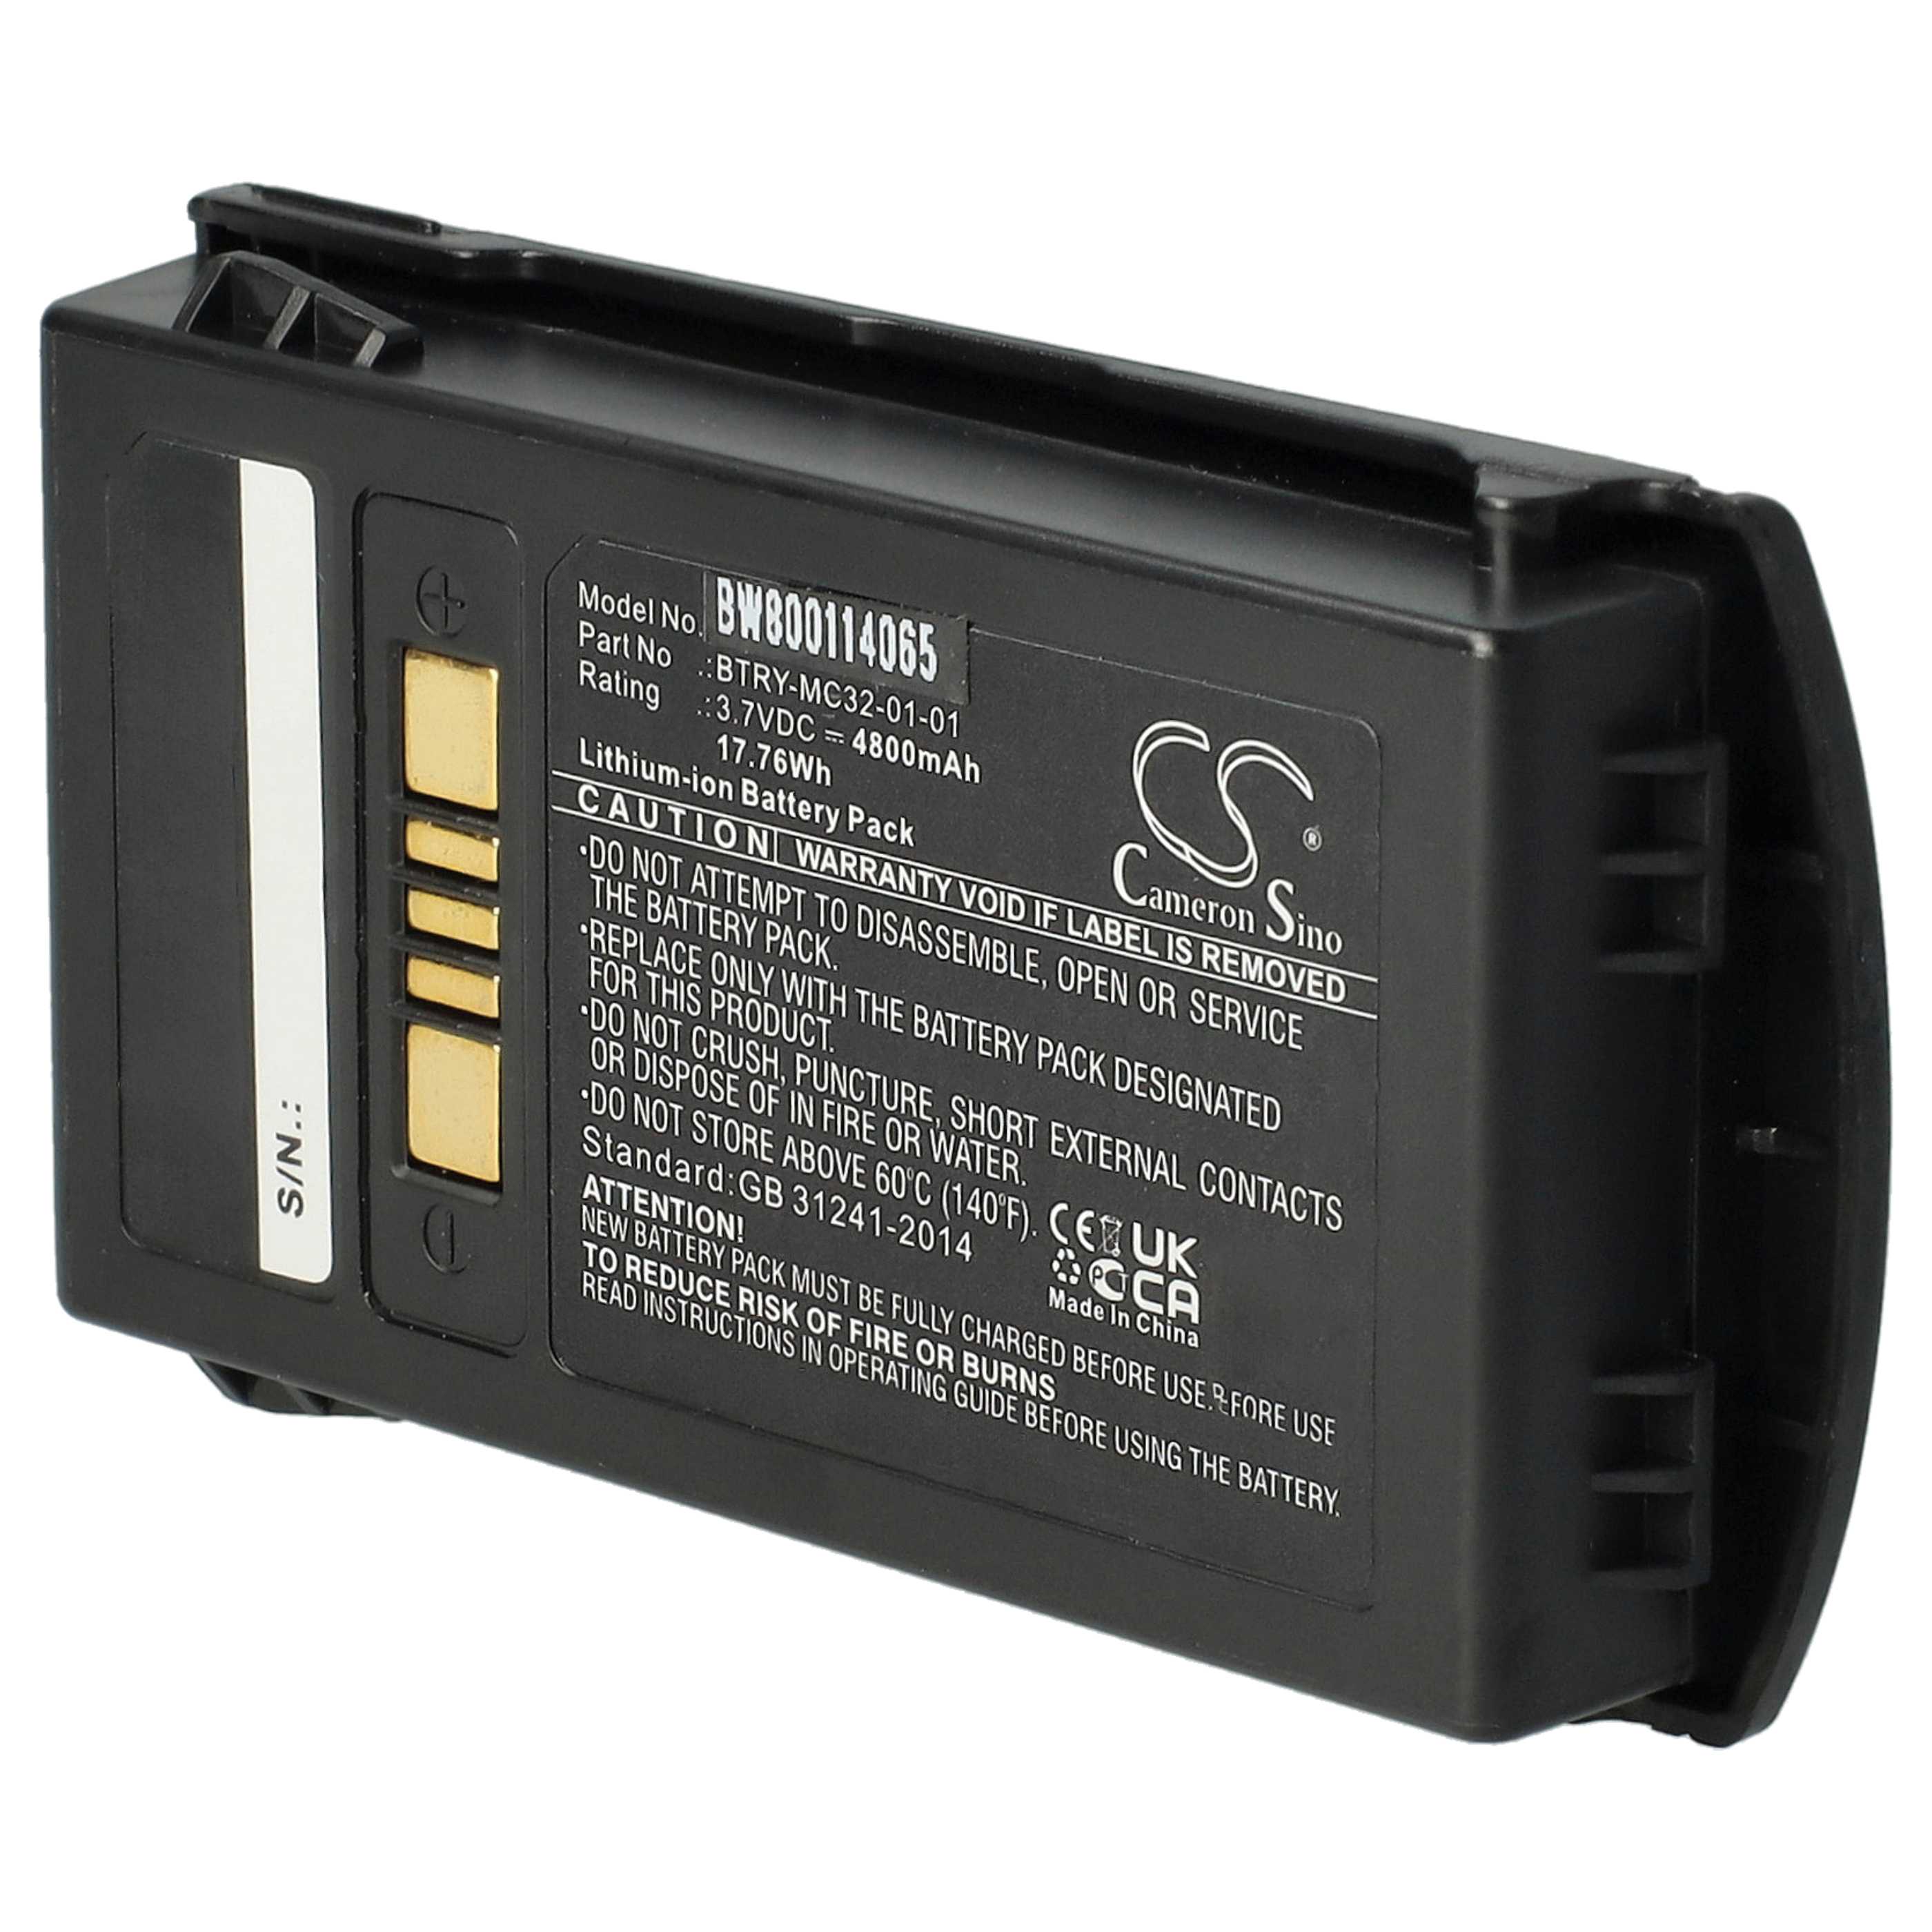 Akumulator do czytnika kodów kreskowych zamiennik Motorola BTRY-MC32-01-01 - 4800 mAh 3,7 V Li-Ion